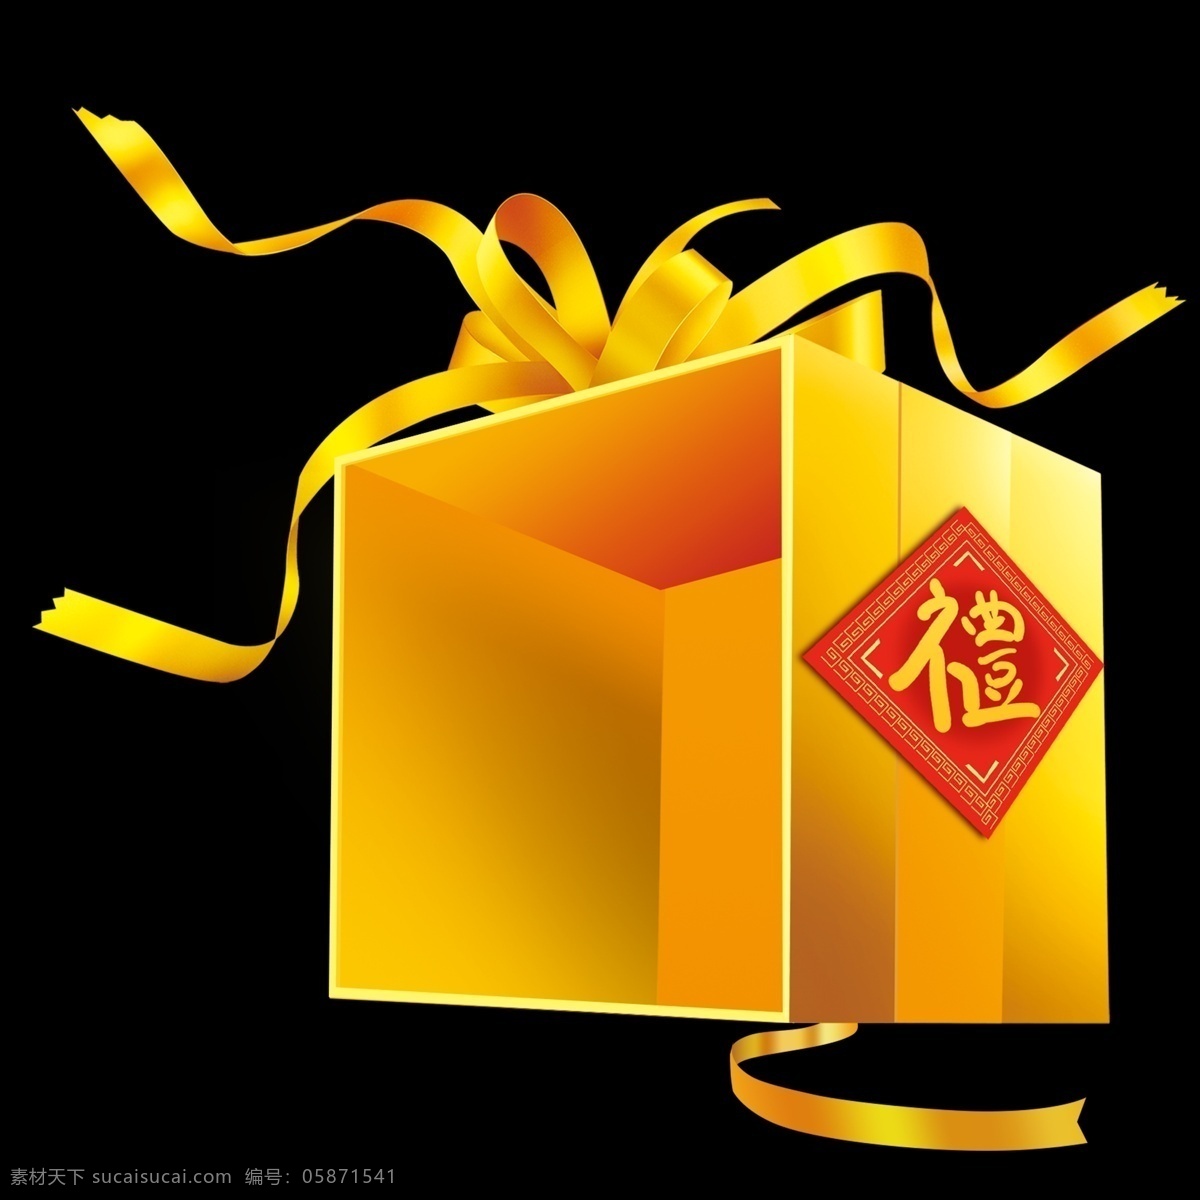 商用 黄色 喜庆 手绘 写实 节日 礼盒 装饰 元素 包装盒 圣诞节 装饰元素 可商用 节日礼盒 新年礼盒 免抠 打开的礼盒